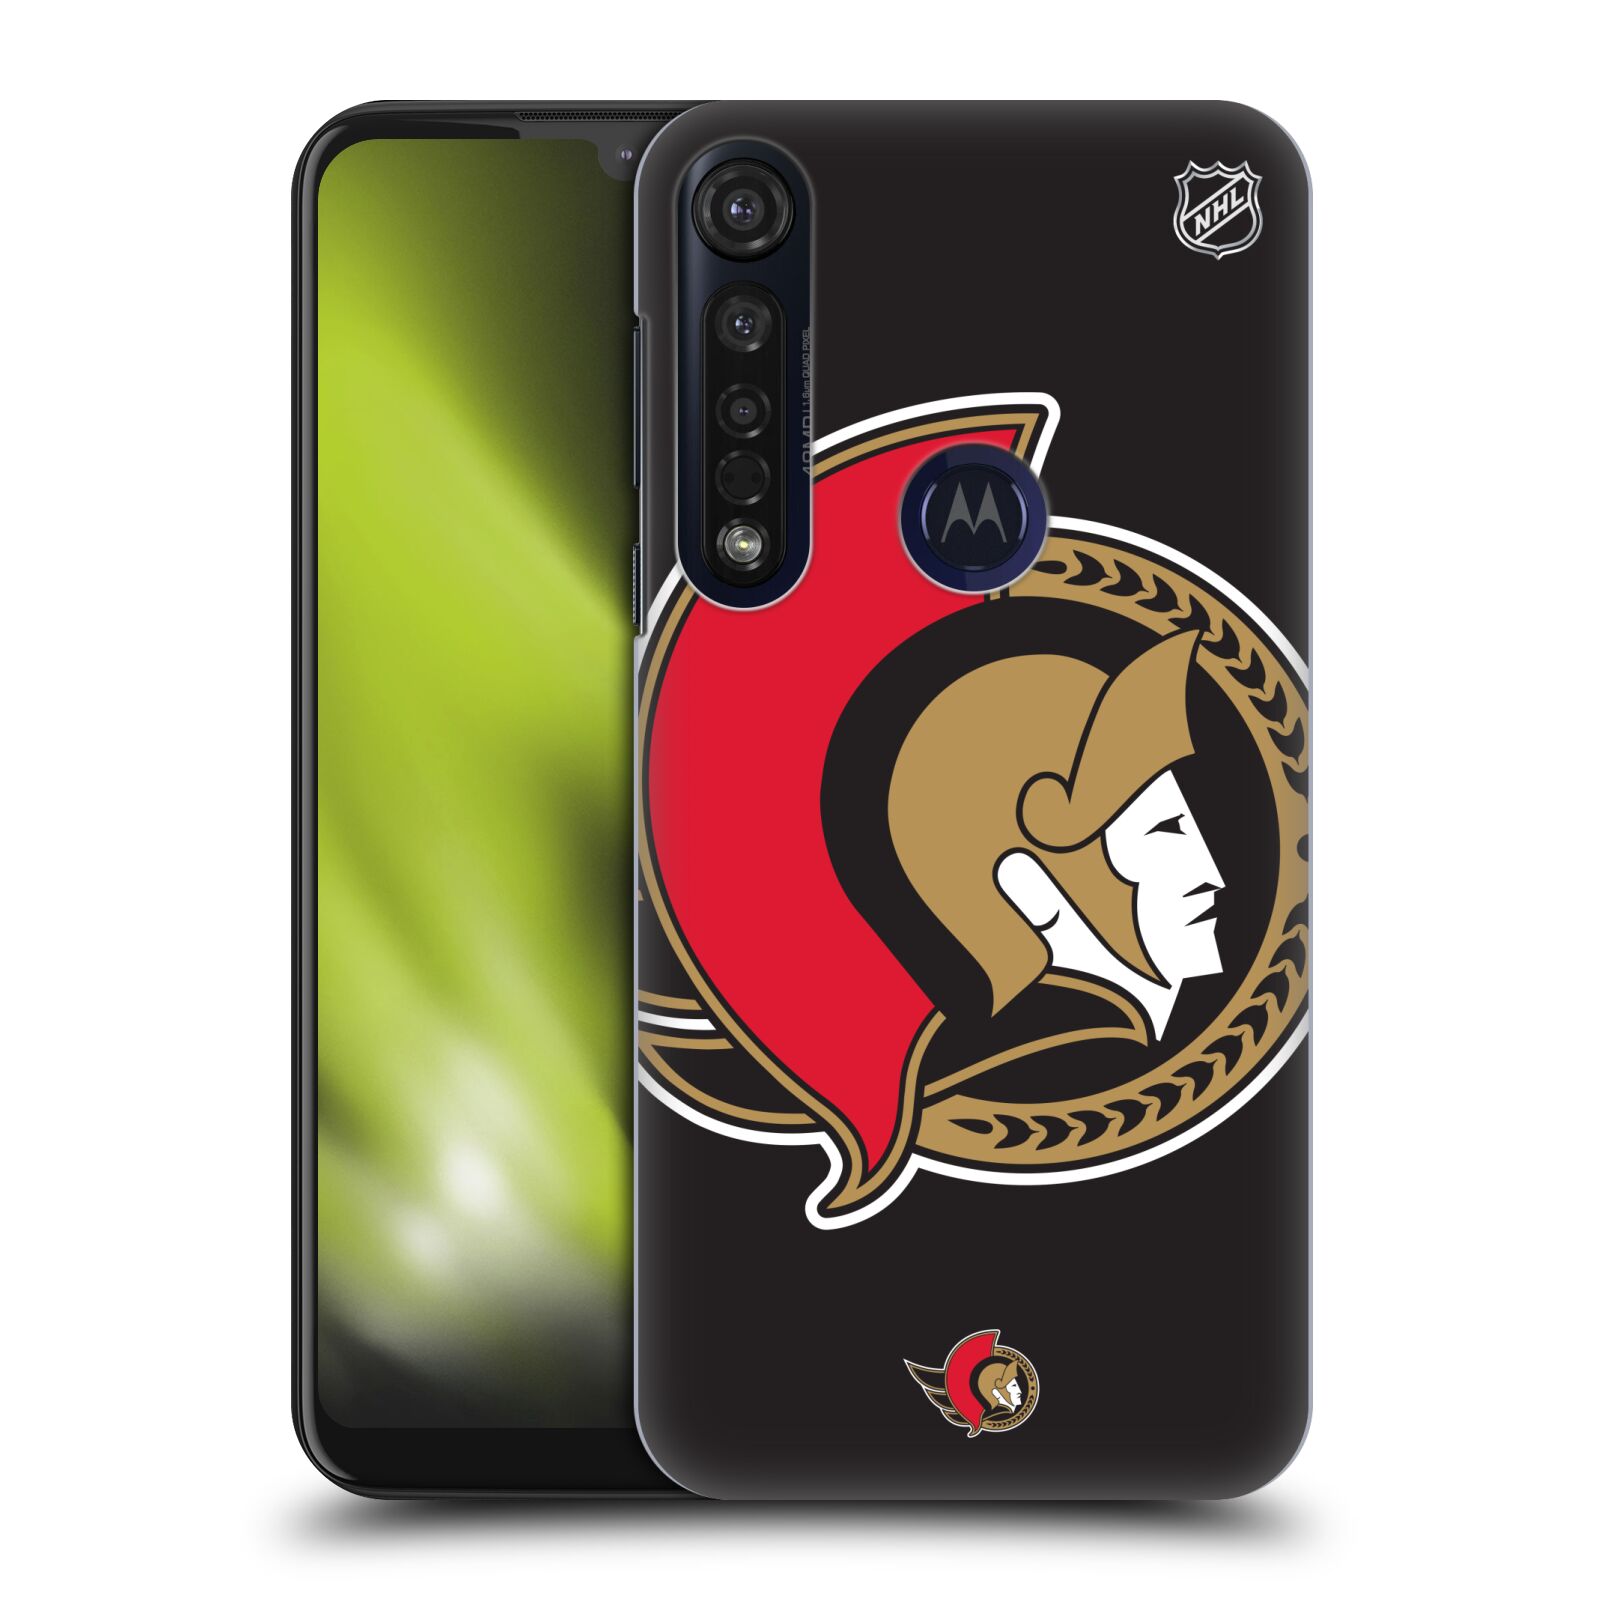 Pouzdro na mobil Motorola Moto G8 PLUS - HEAD CASE - Hokej NHL - Ottawa Senators - Velký znak